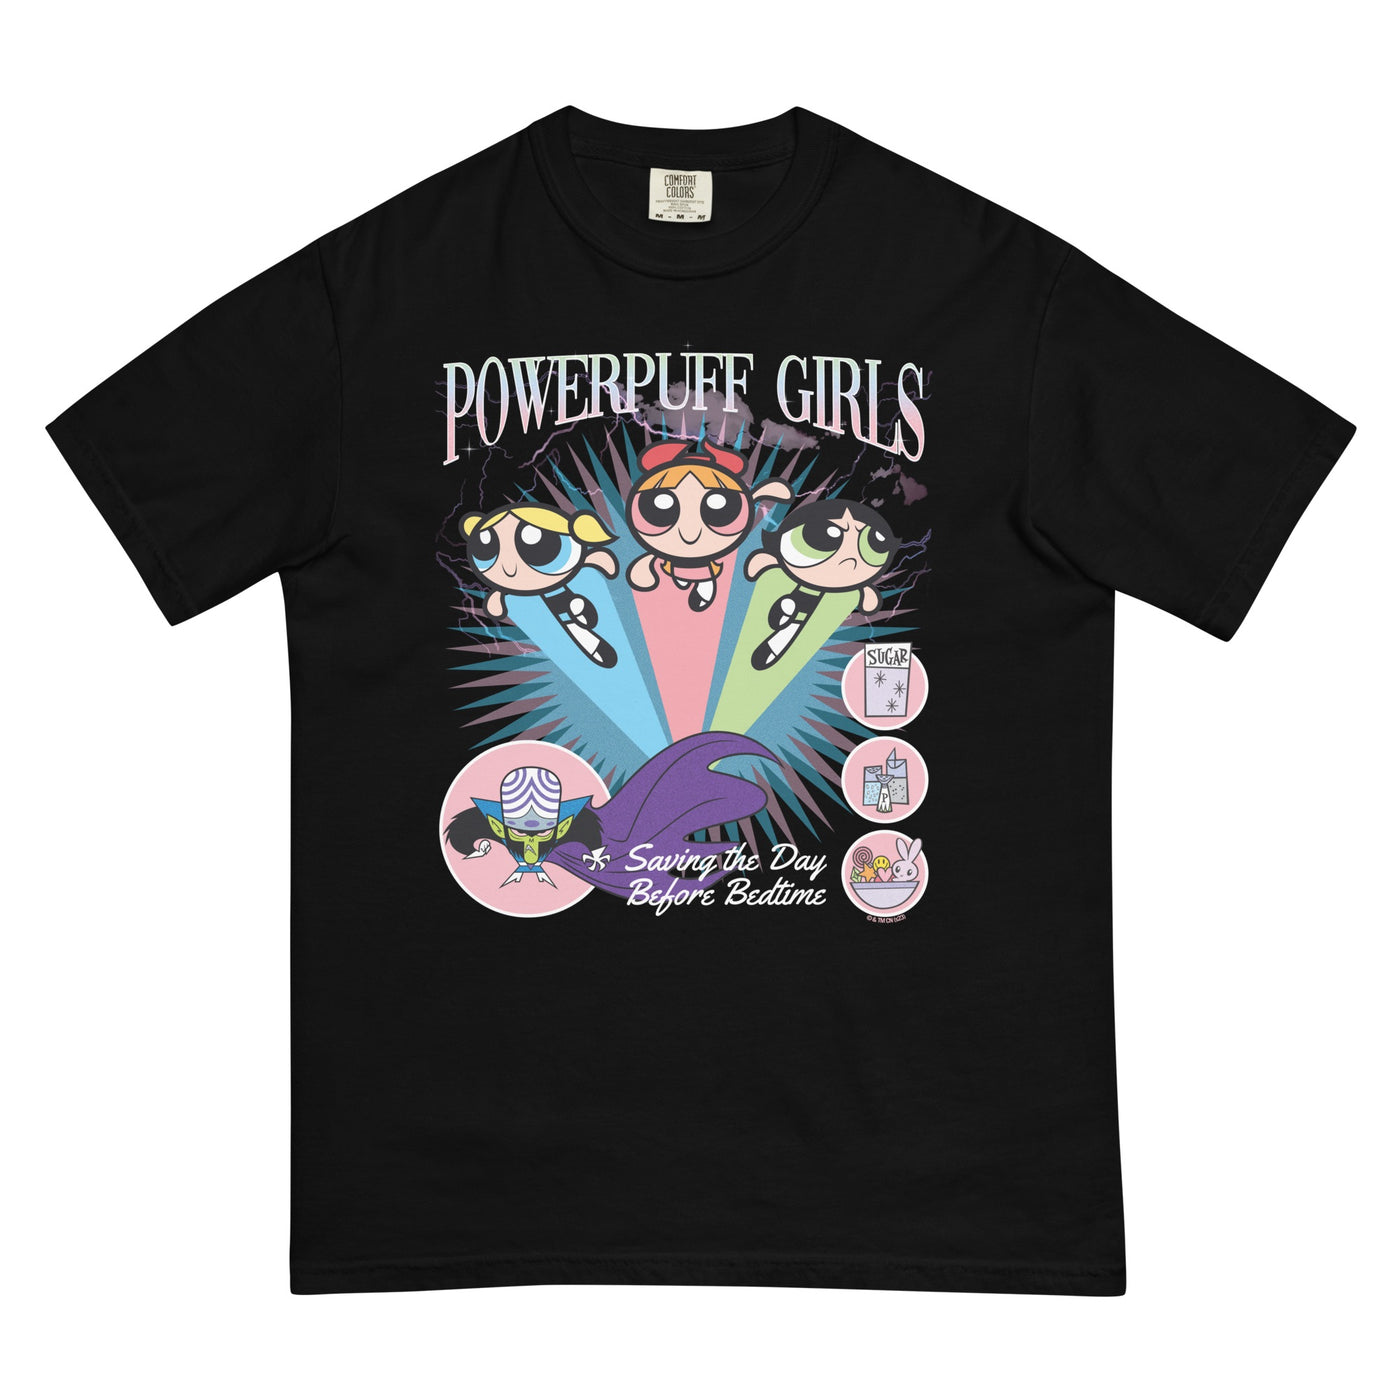 PowerPuff Girls Saving the Day Before Bedtime T-shirt